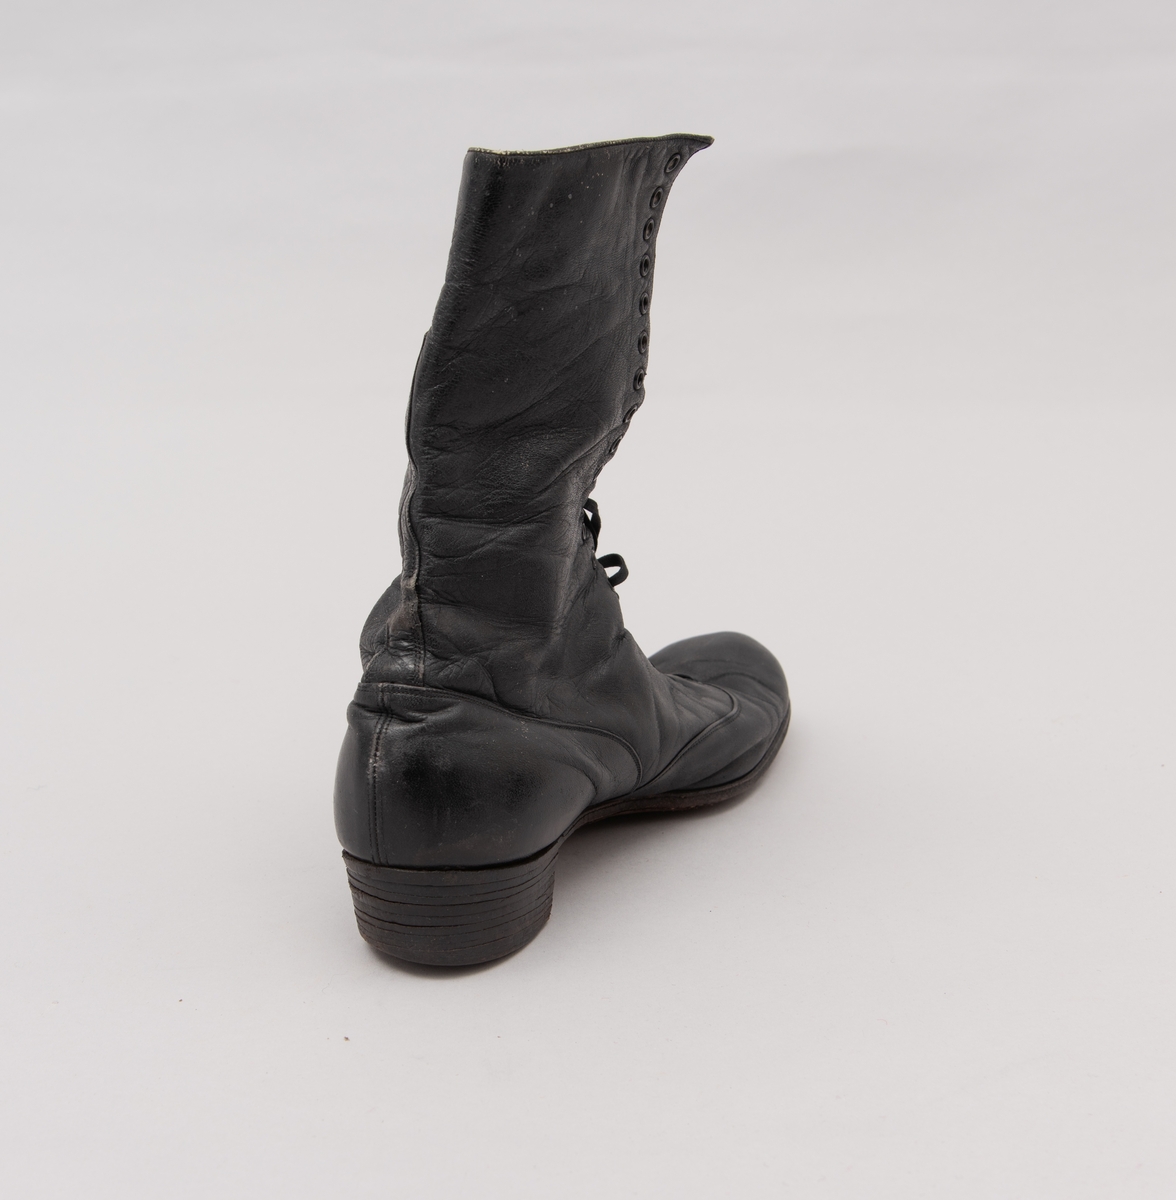 Et par damestøvler i sort lær med snøring. Laget av AS Raade skofabrikk, Moss.